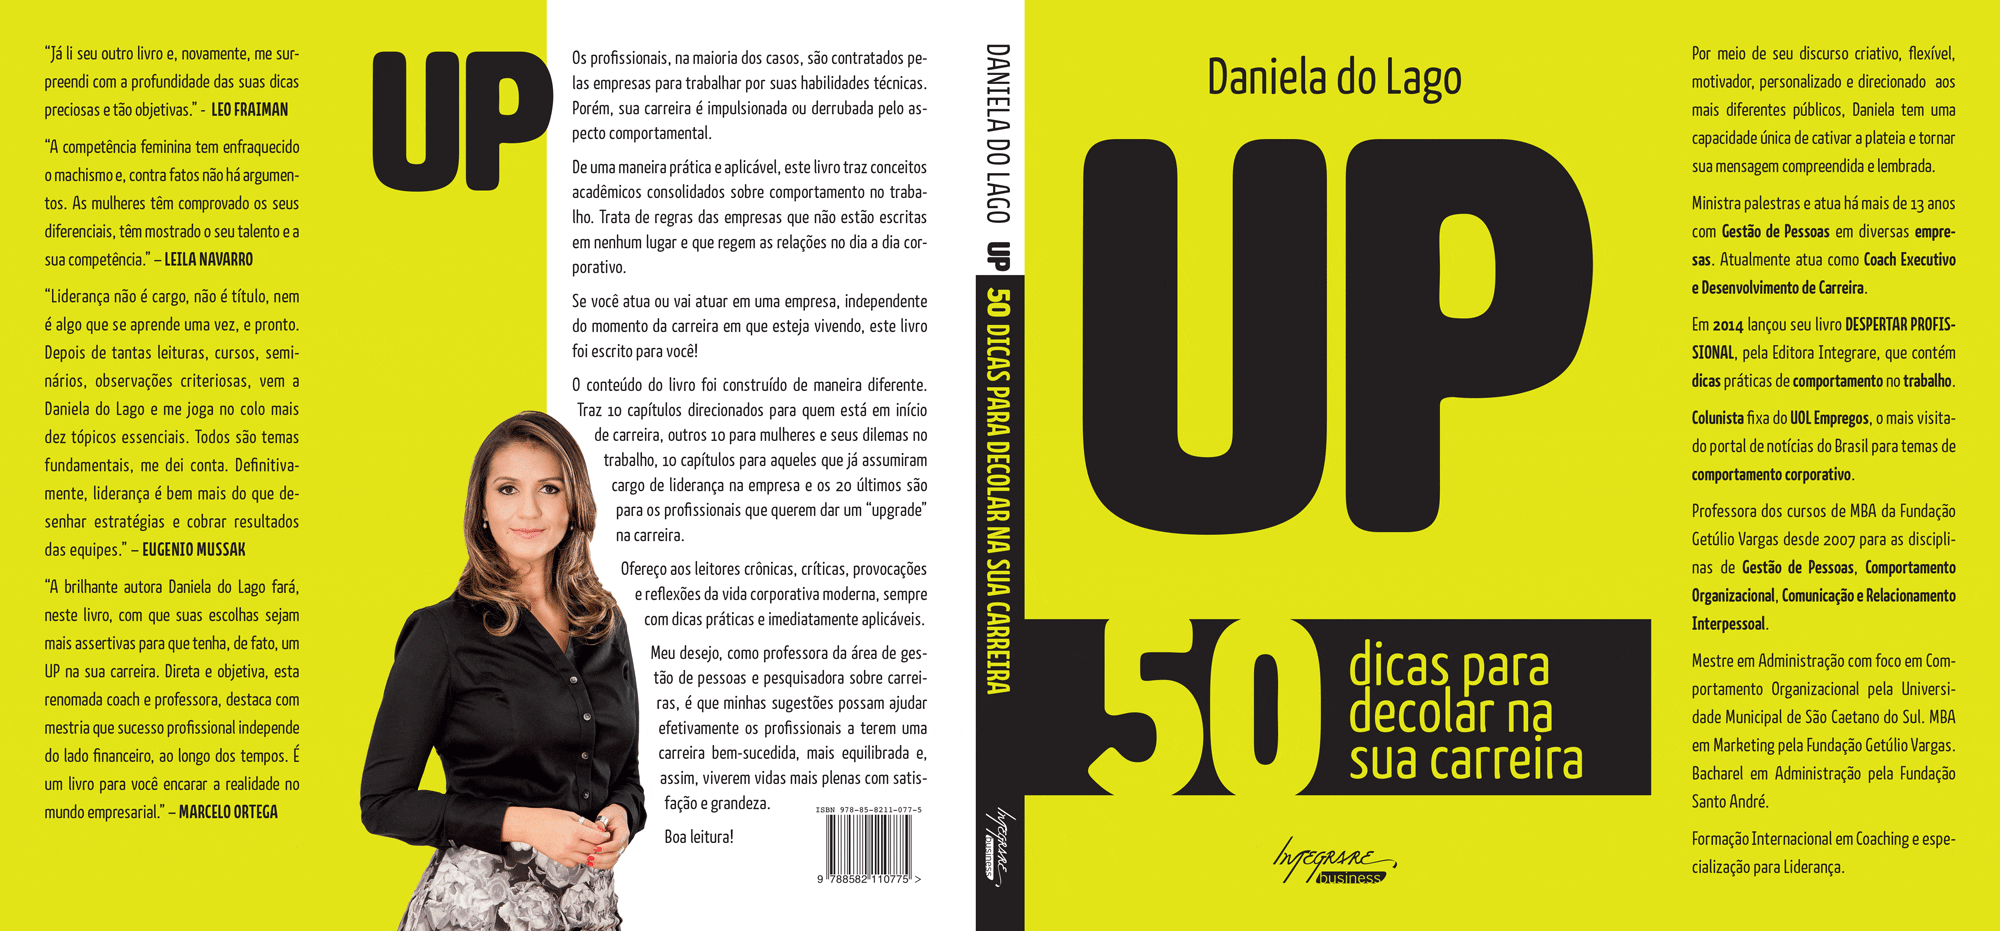 capa do livro "UP" de Daniela do Lago para a Editora Integrare.